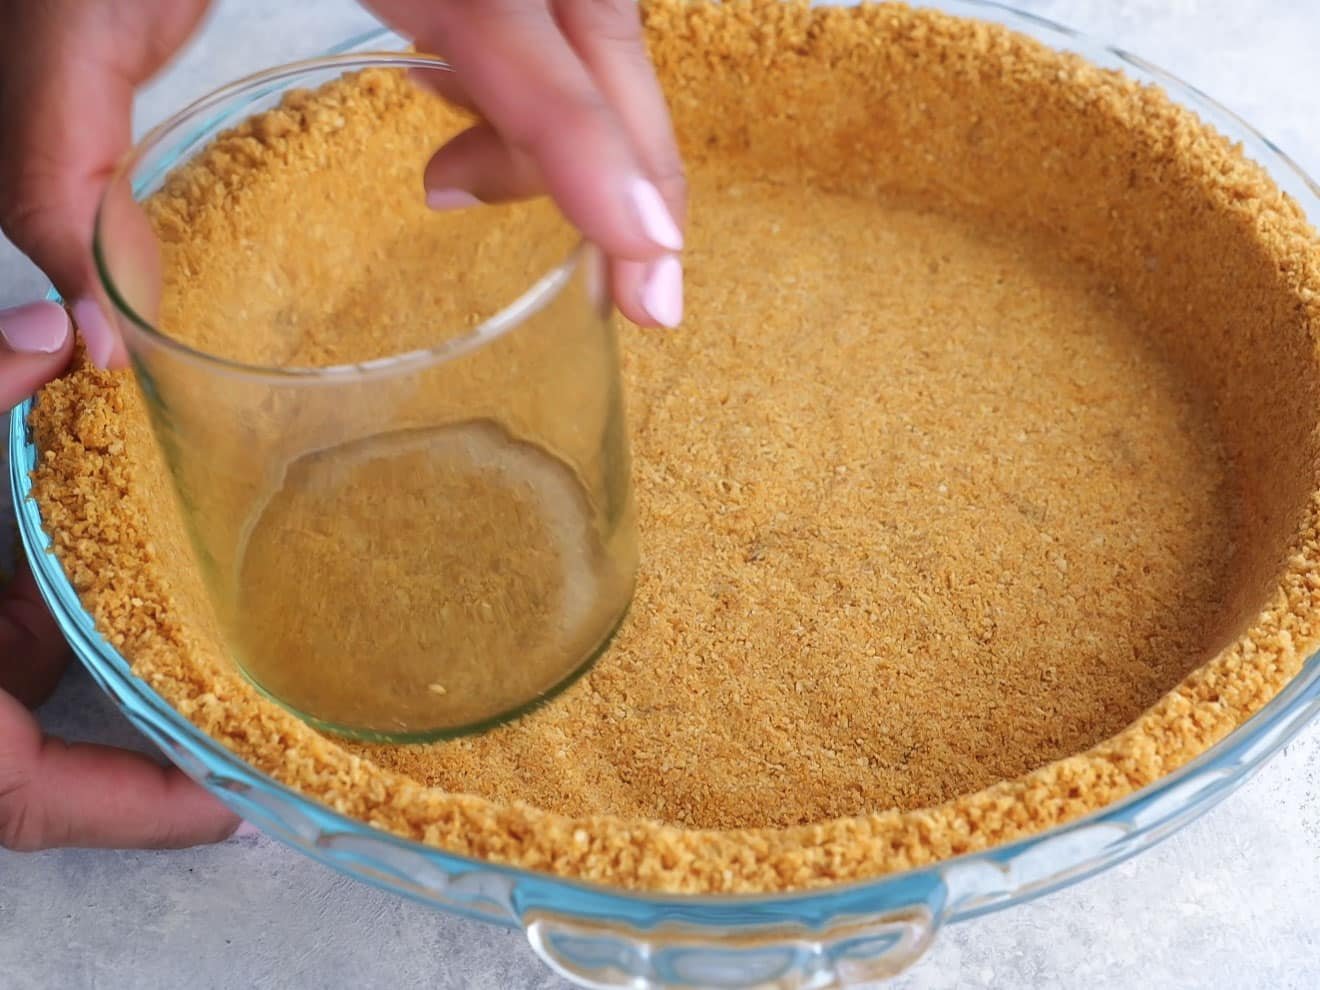 graham cracker crust going into pie pan